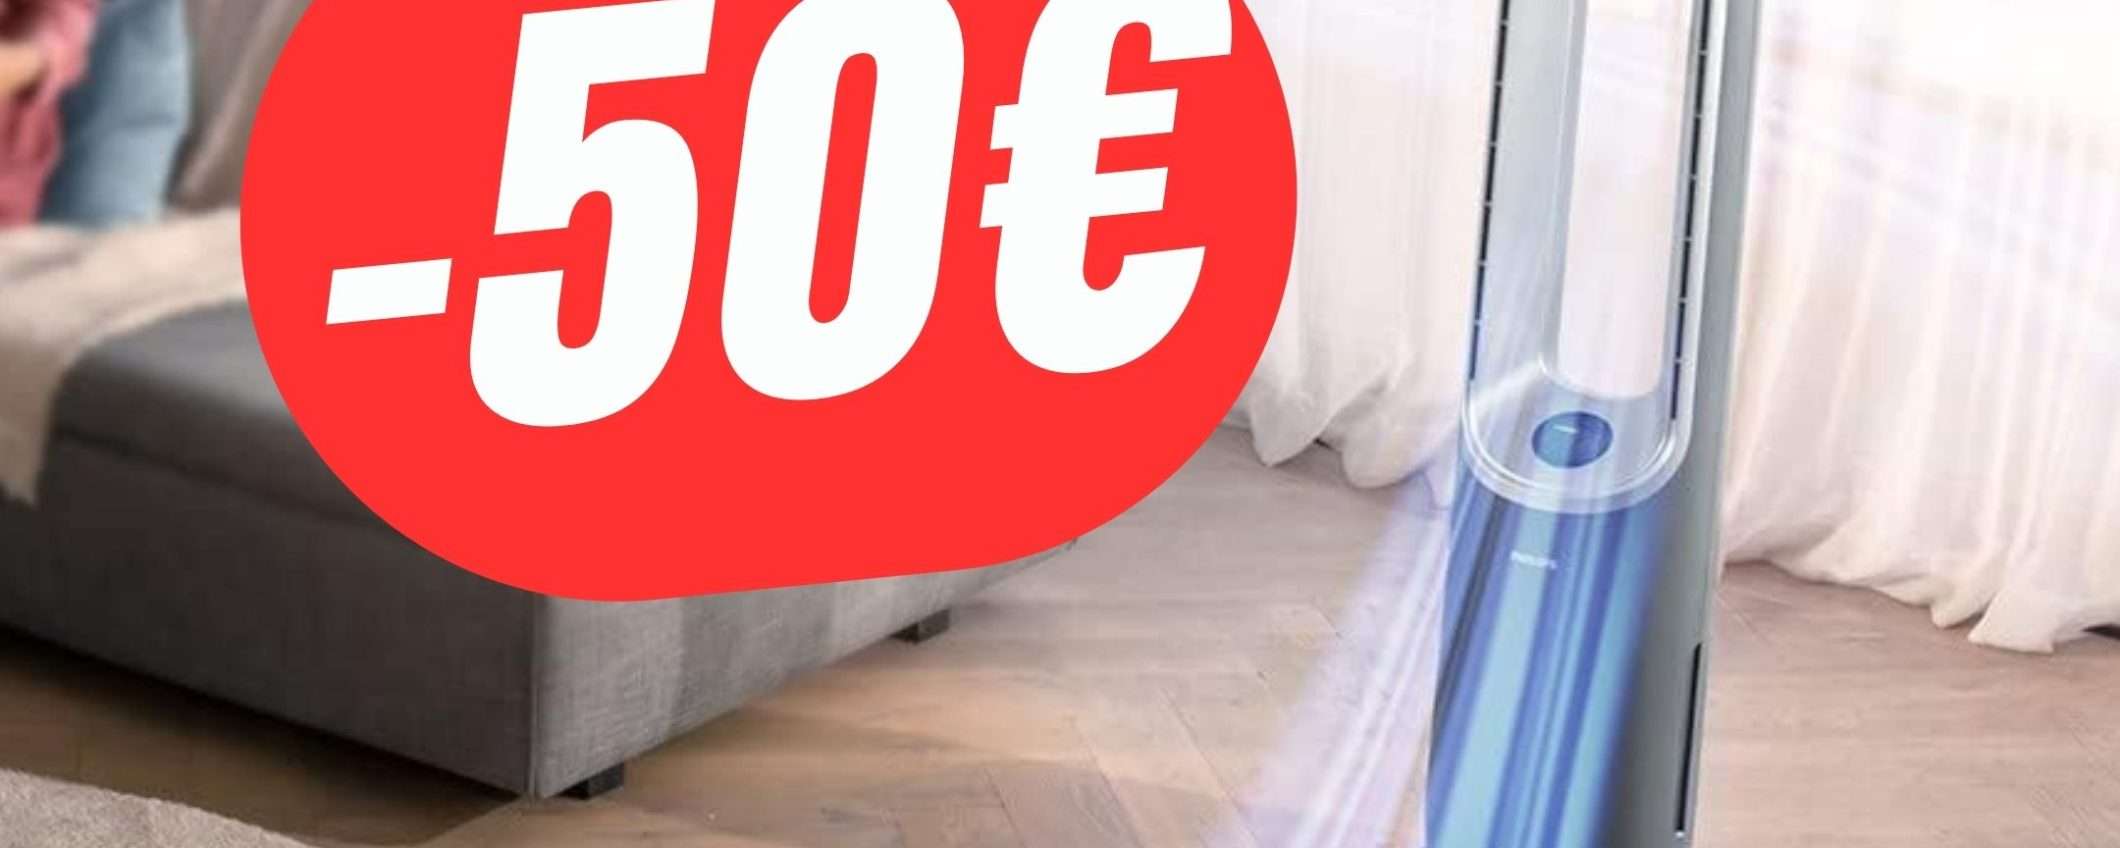 Il Purificatore-Ventilatore di Philips è scontato di -50€!